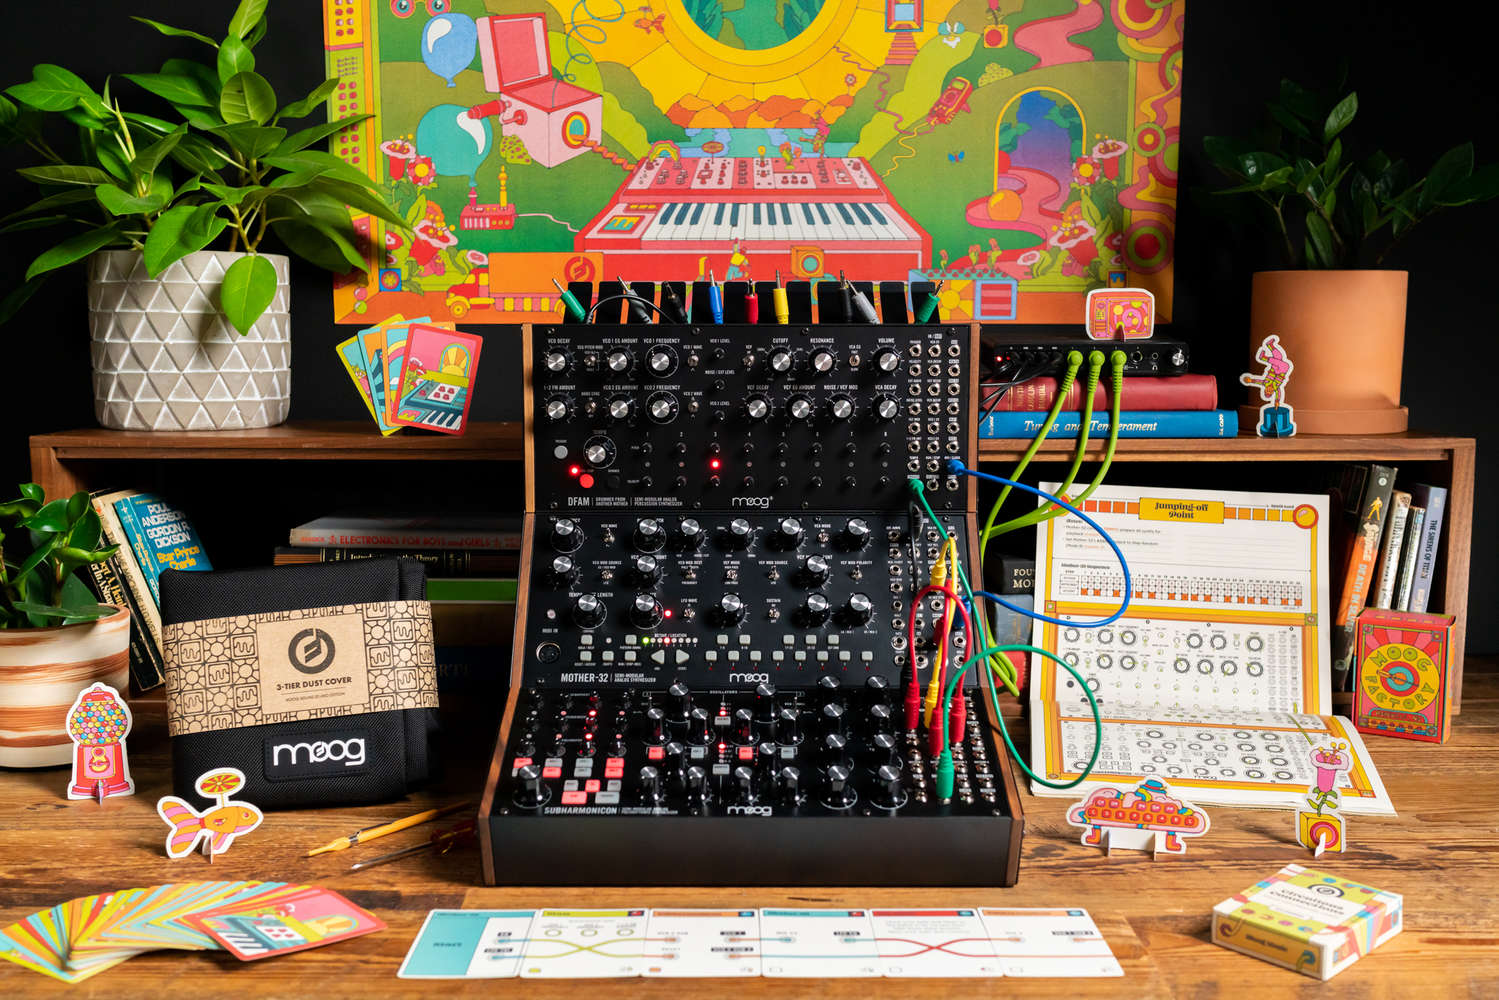 moog sound studio review